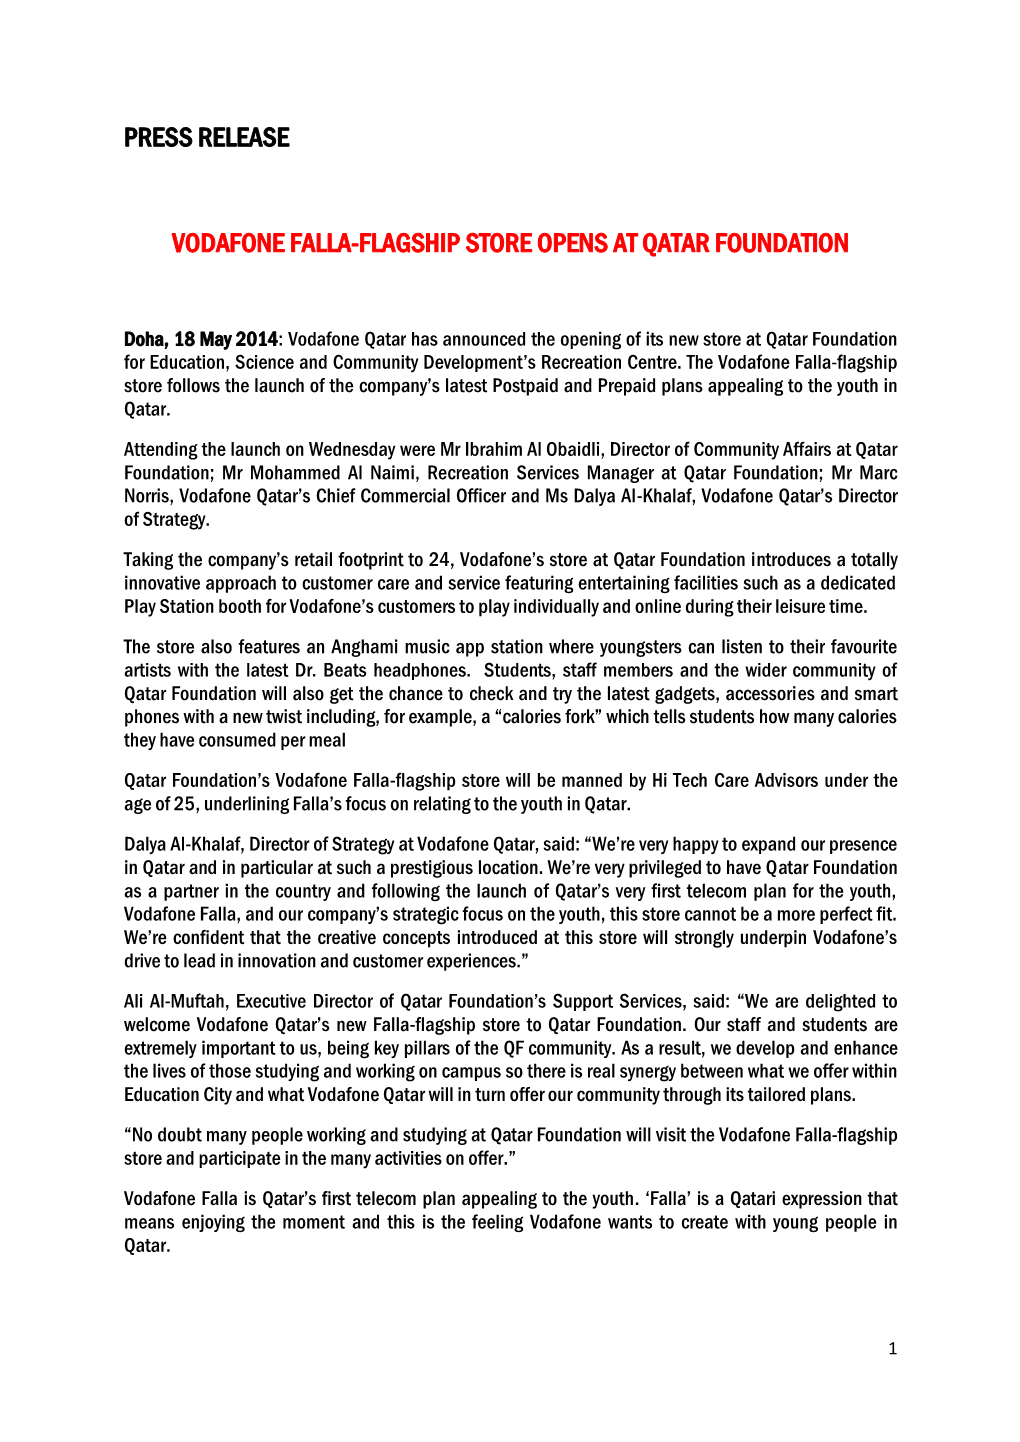 Press Release Vodafone Falla-Flagship Store Opens